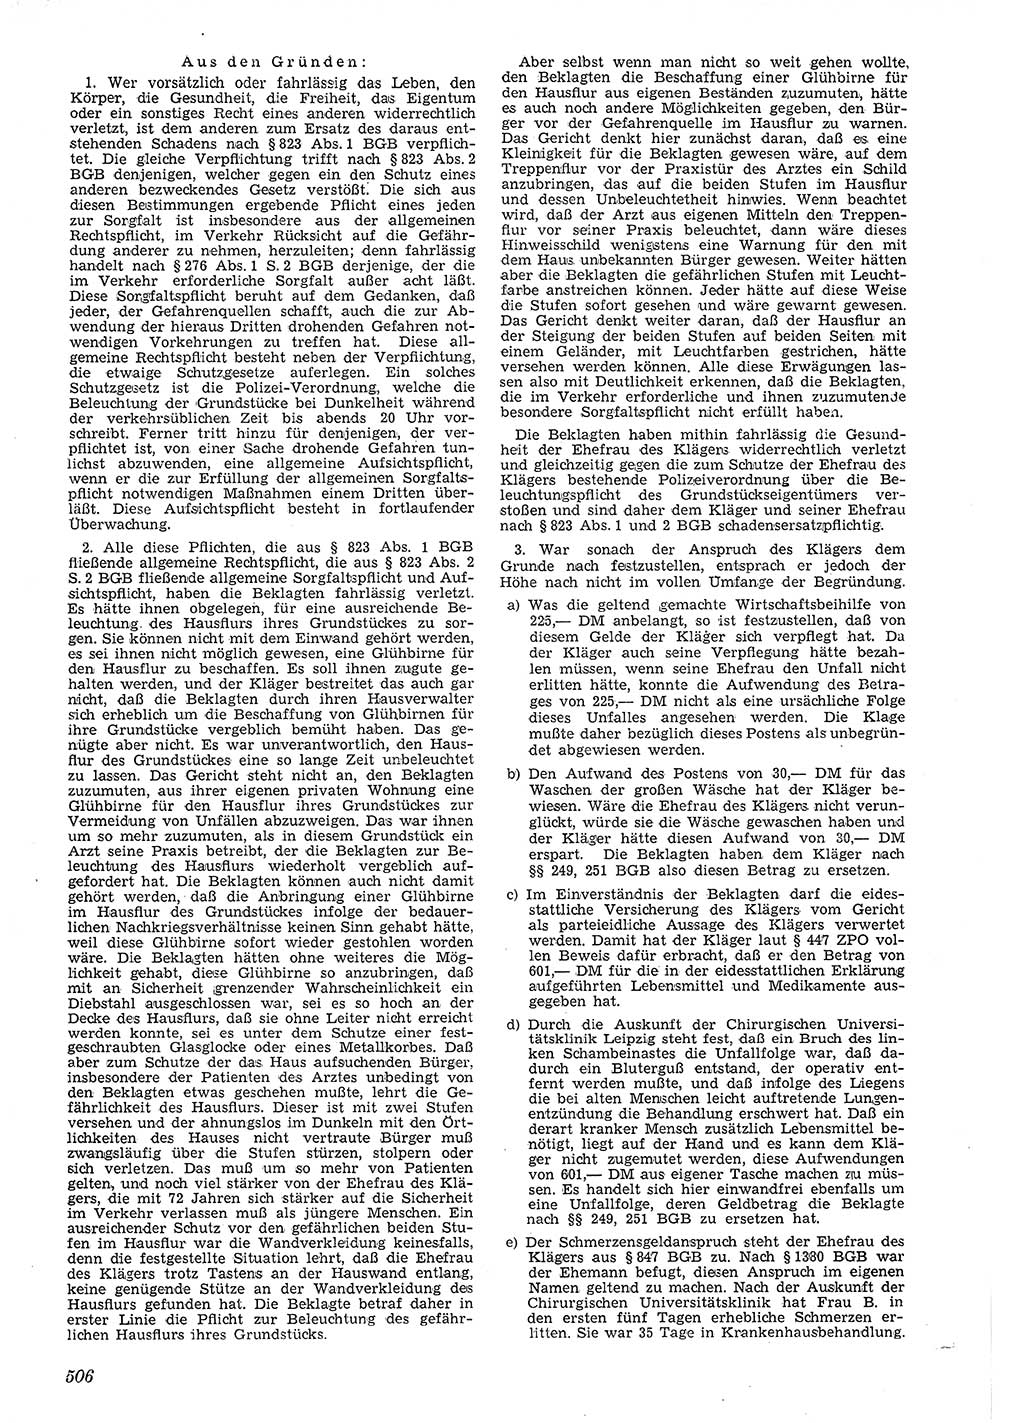 Neue Justiz (NJ), Zeitschrift für Recht und Rechtswissenschaft [Deutsche Demokratische Republik (DDR)], 4. Jahrgang 1950, Seite 506 (NJ DDR 1950, S. 506)